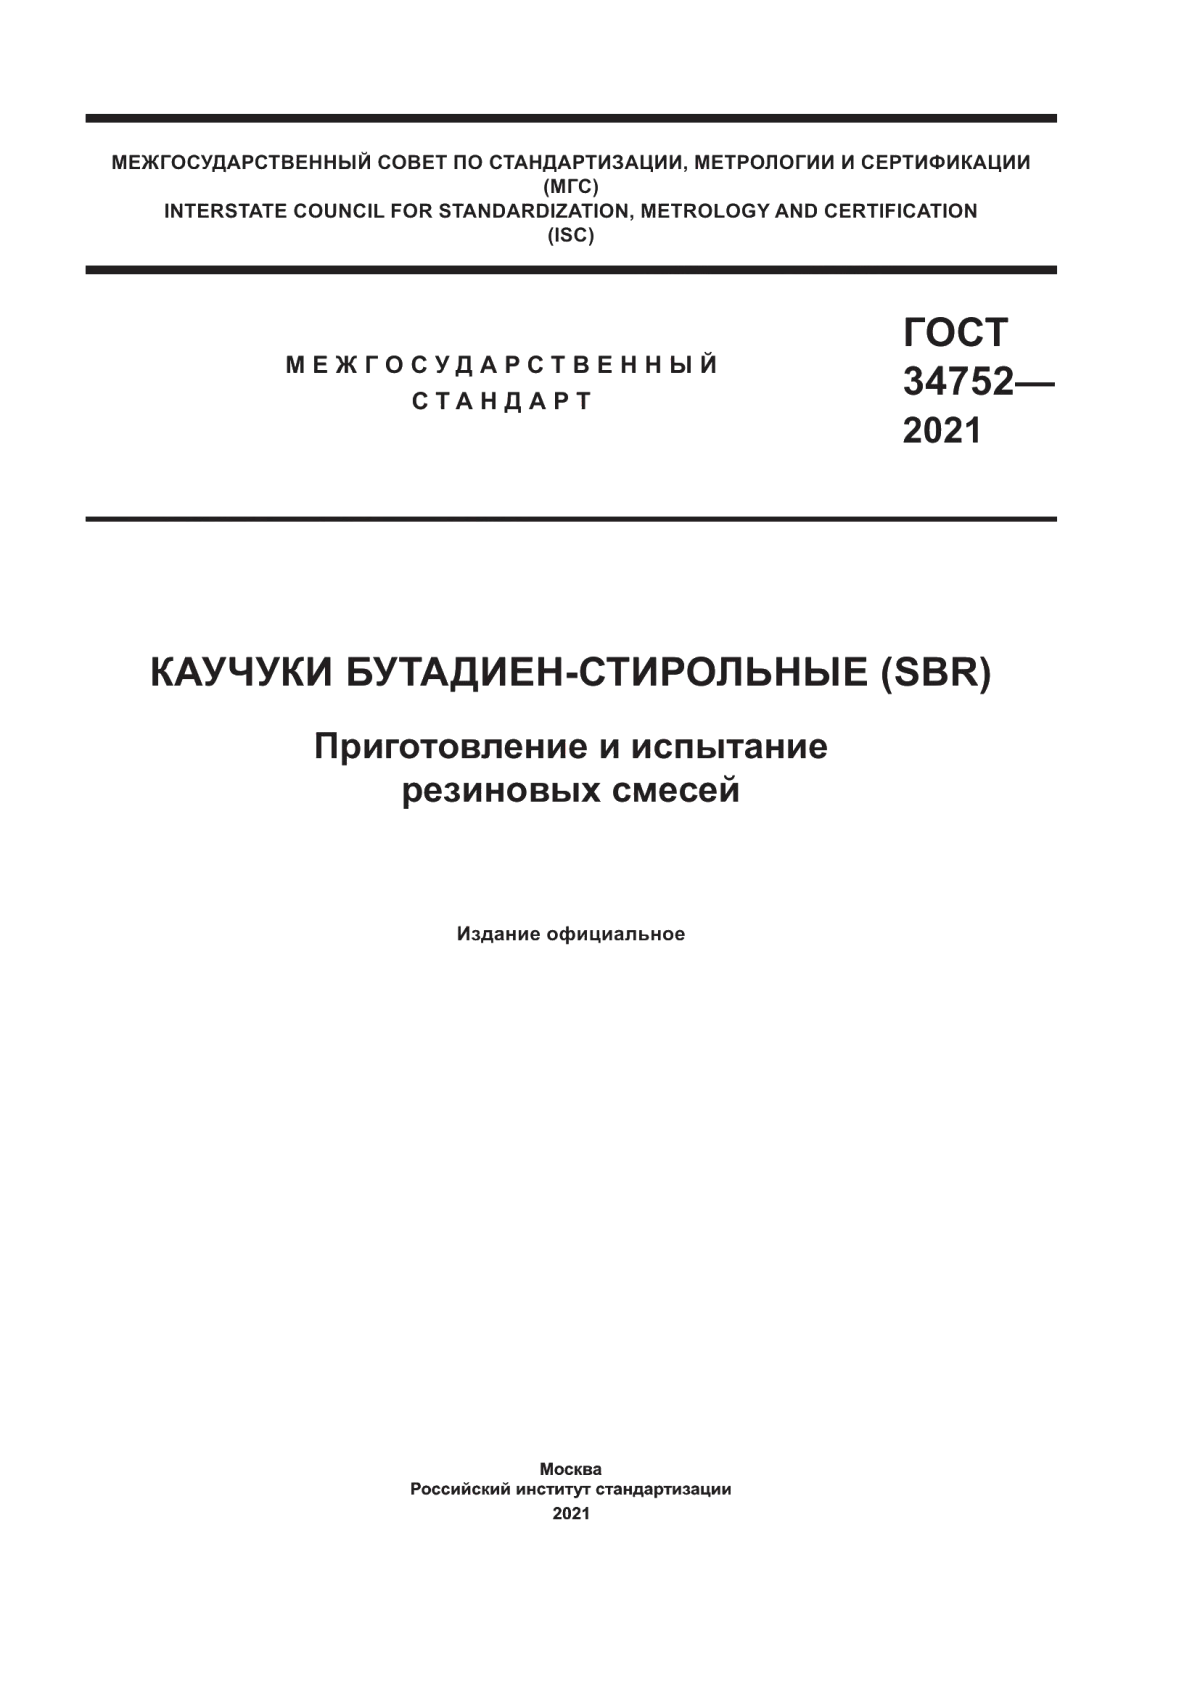 ГОСТ 34752-2021 Каучуки бутадиен-стирольные (SBR). Приготовление и испытание резиновых смесей